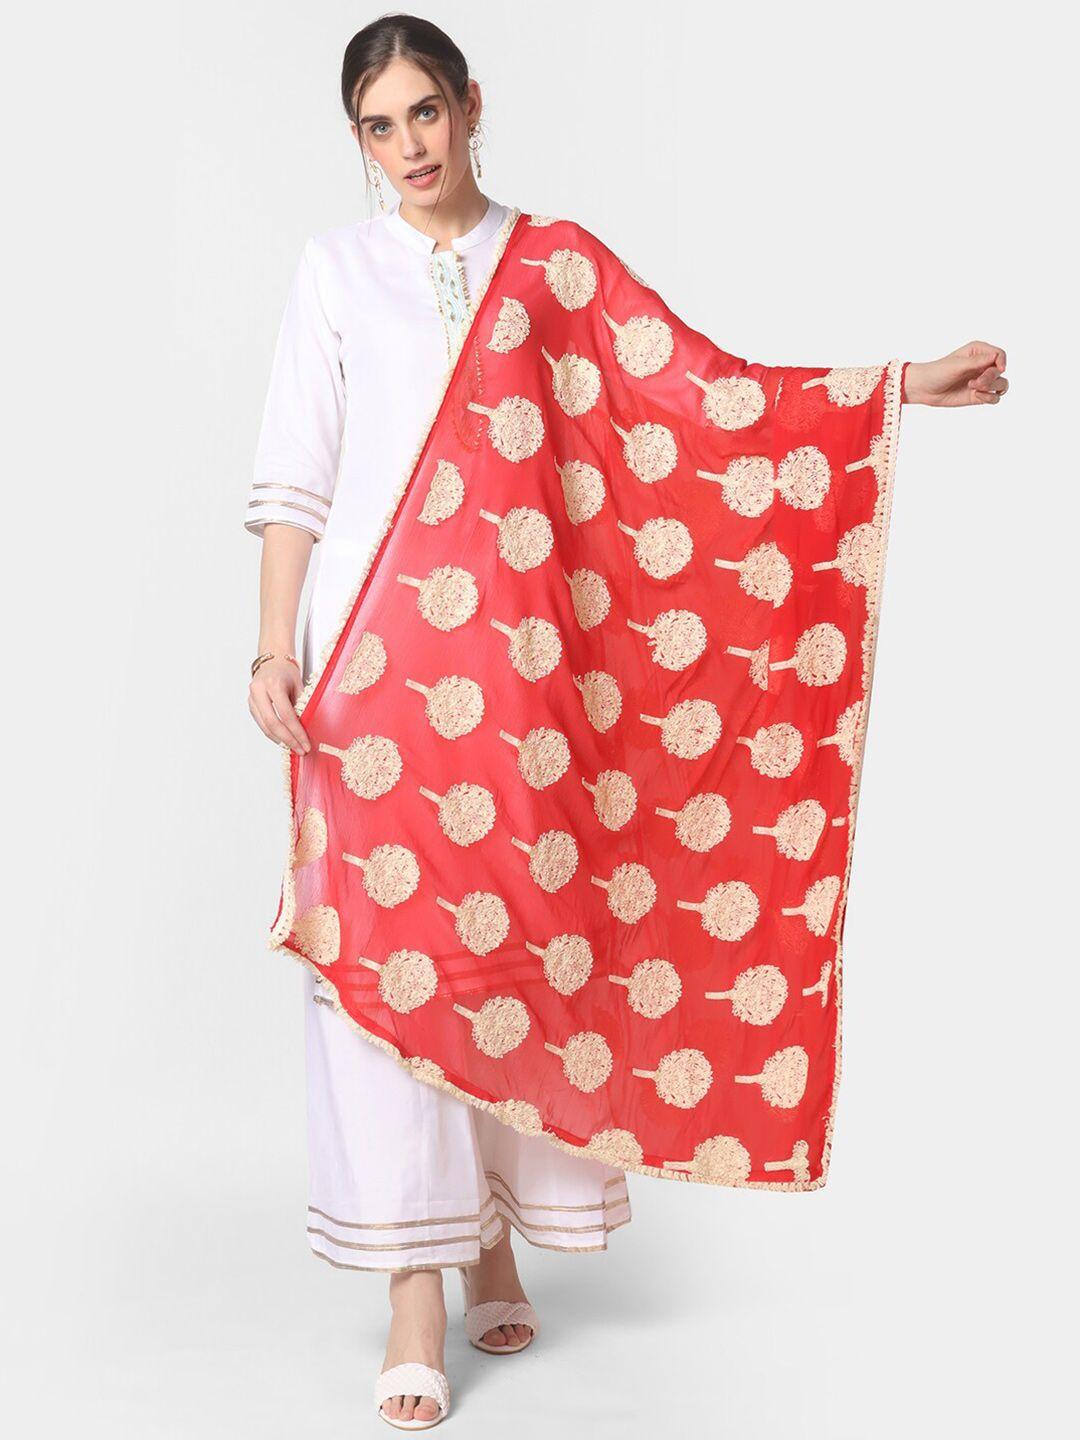 dupatta bazaar red & beige ethnic motifs embroidered dupatta with thread work details